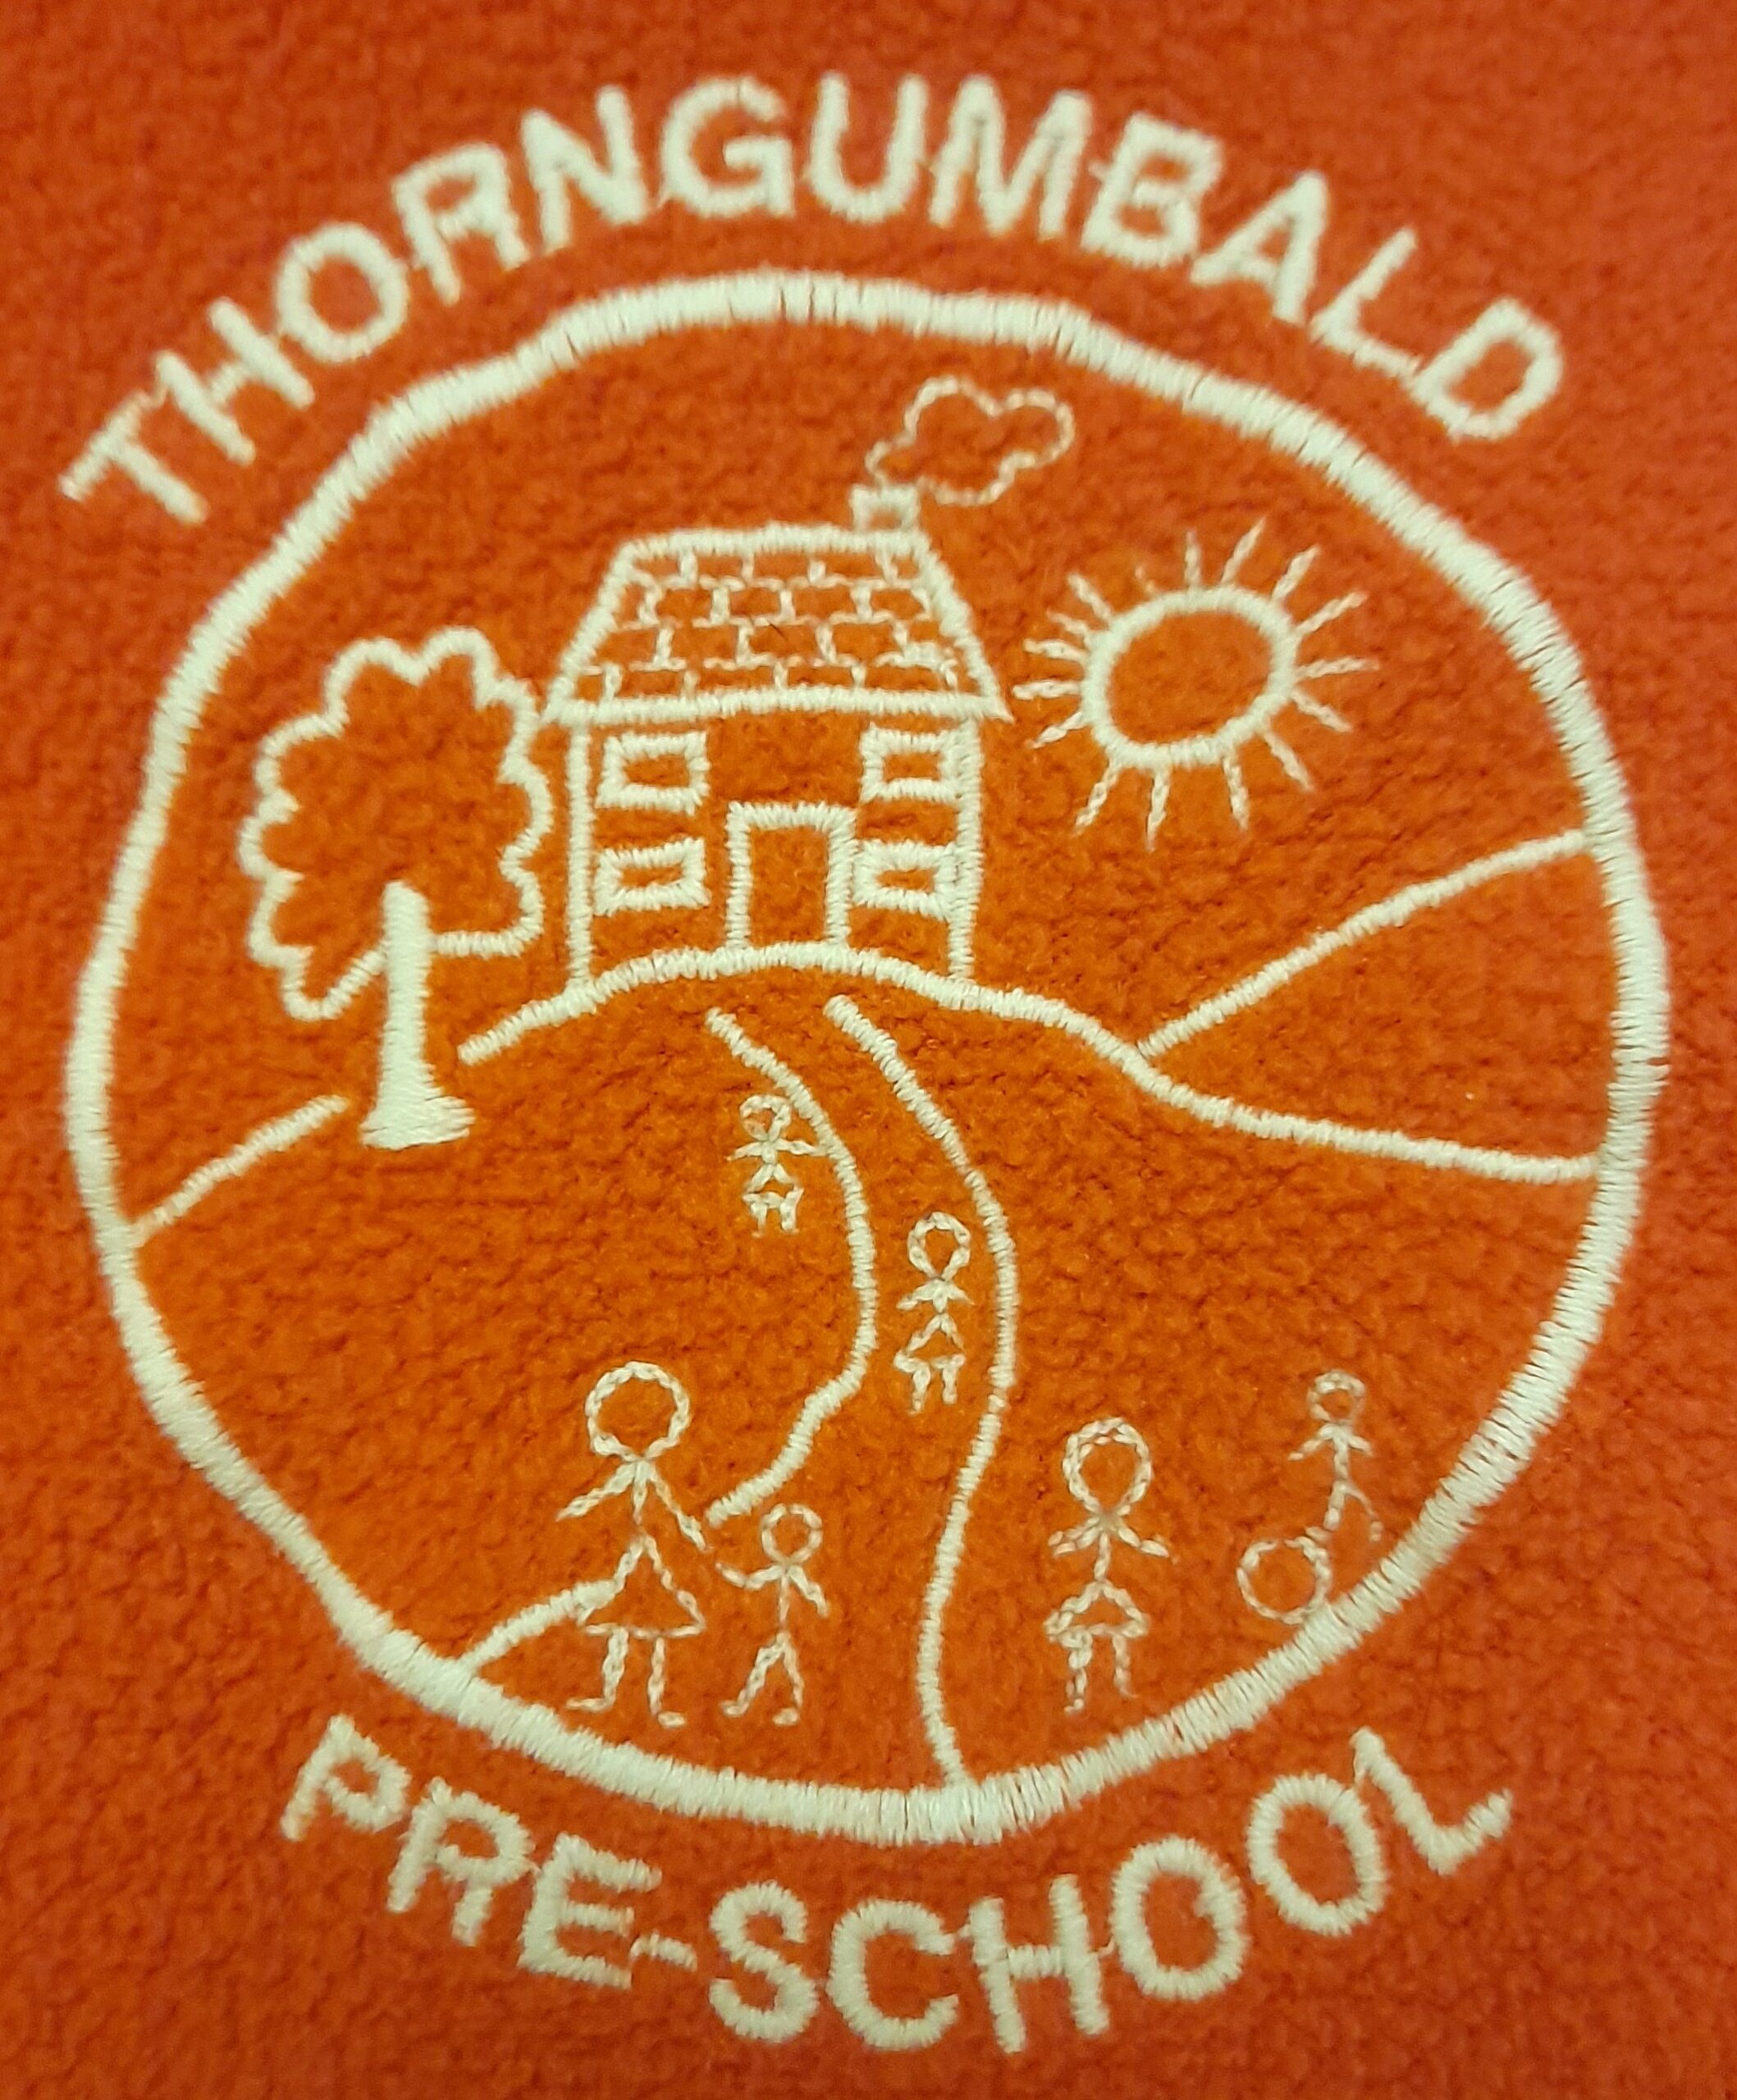 Thorngumbald Pre-School